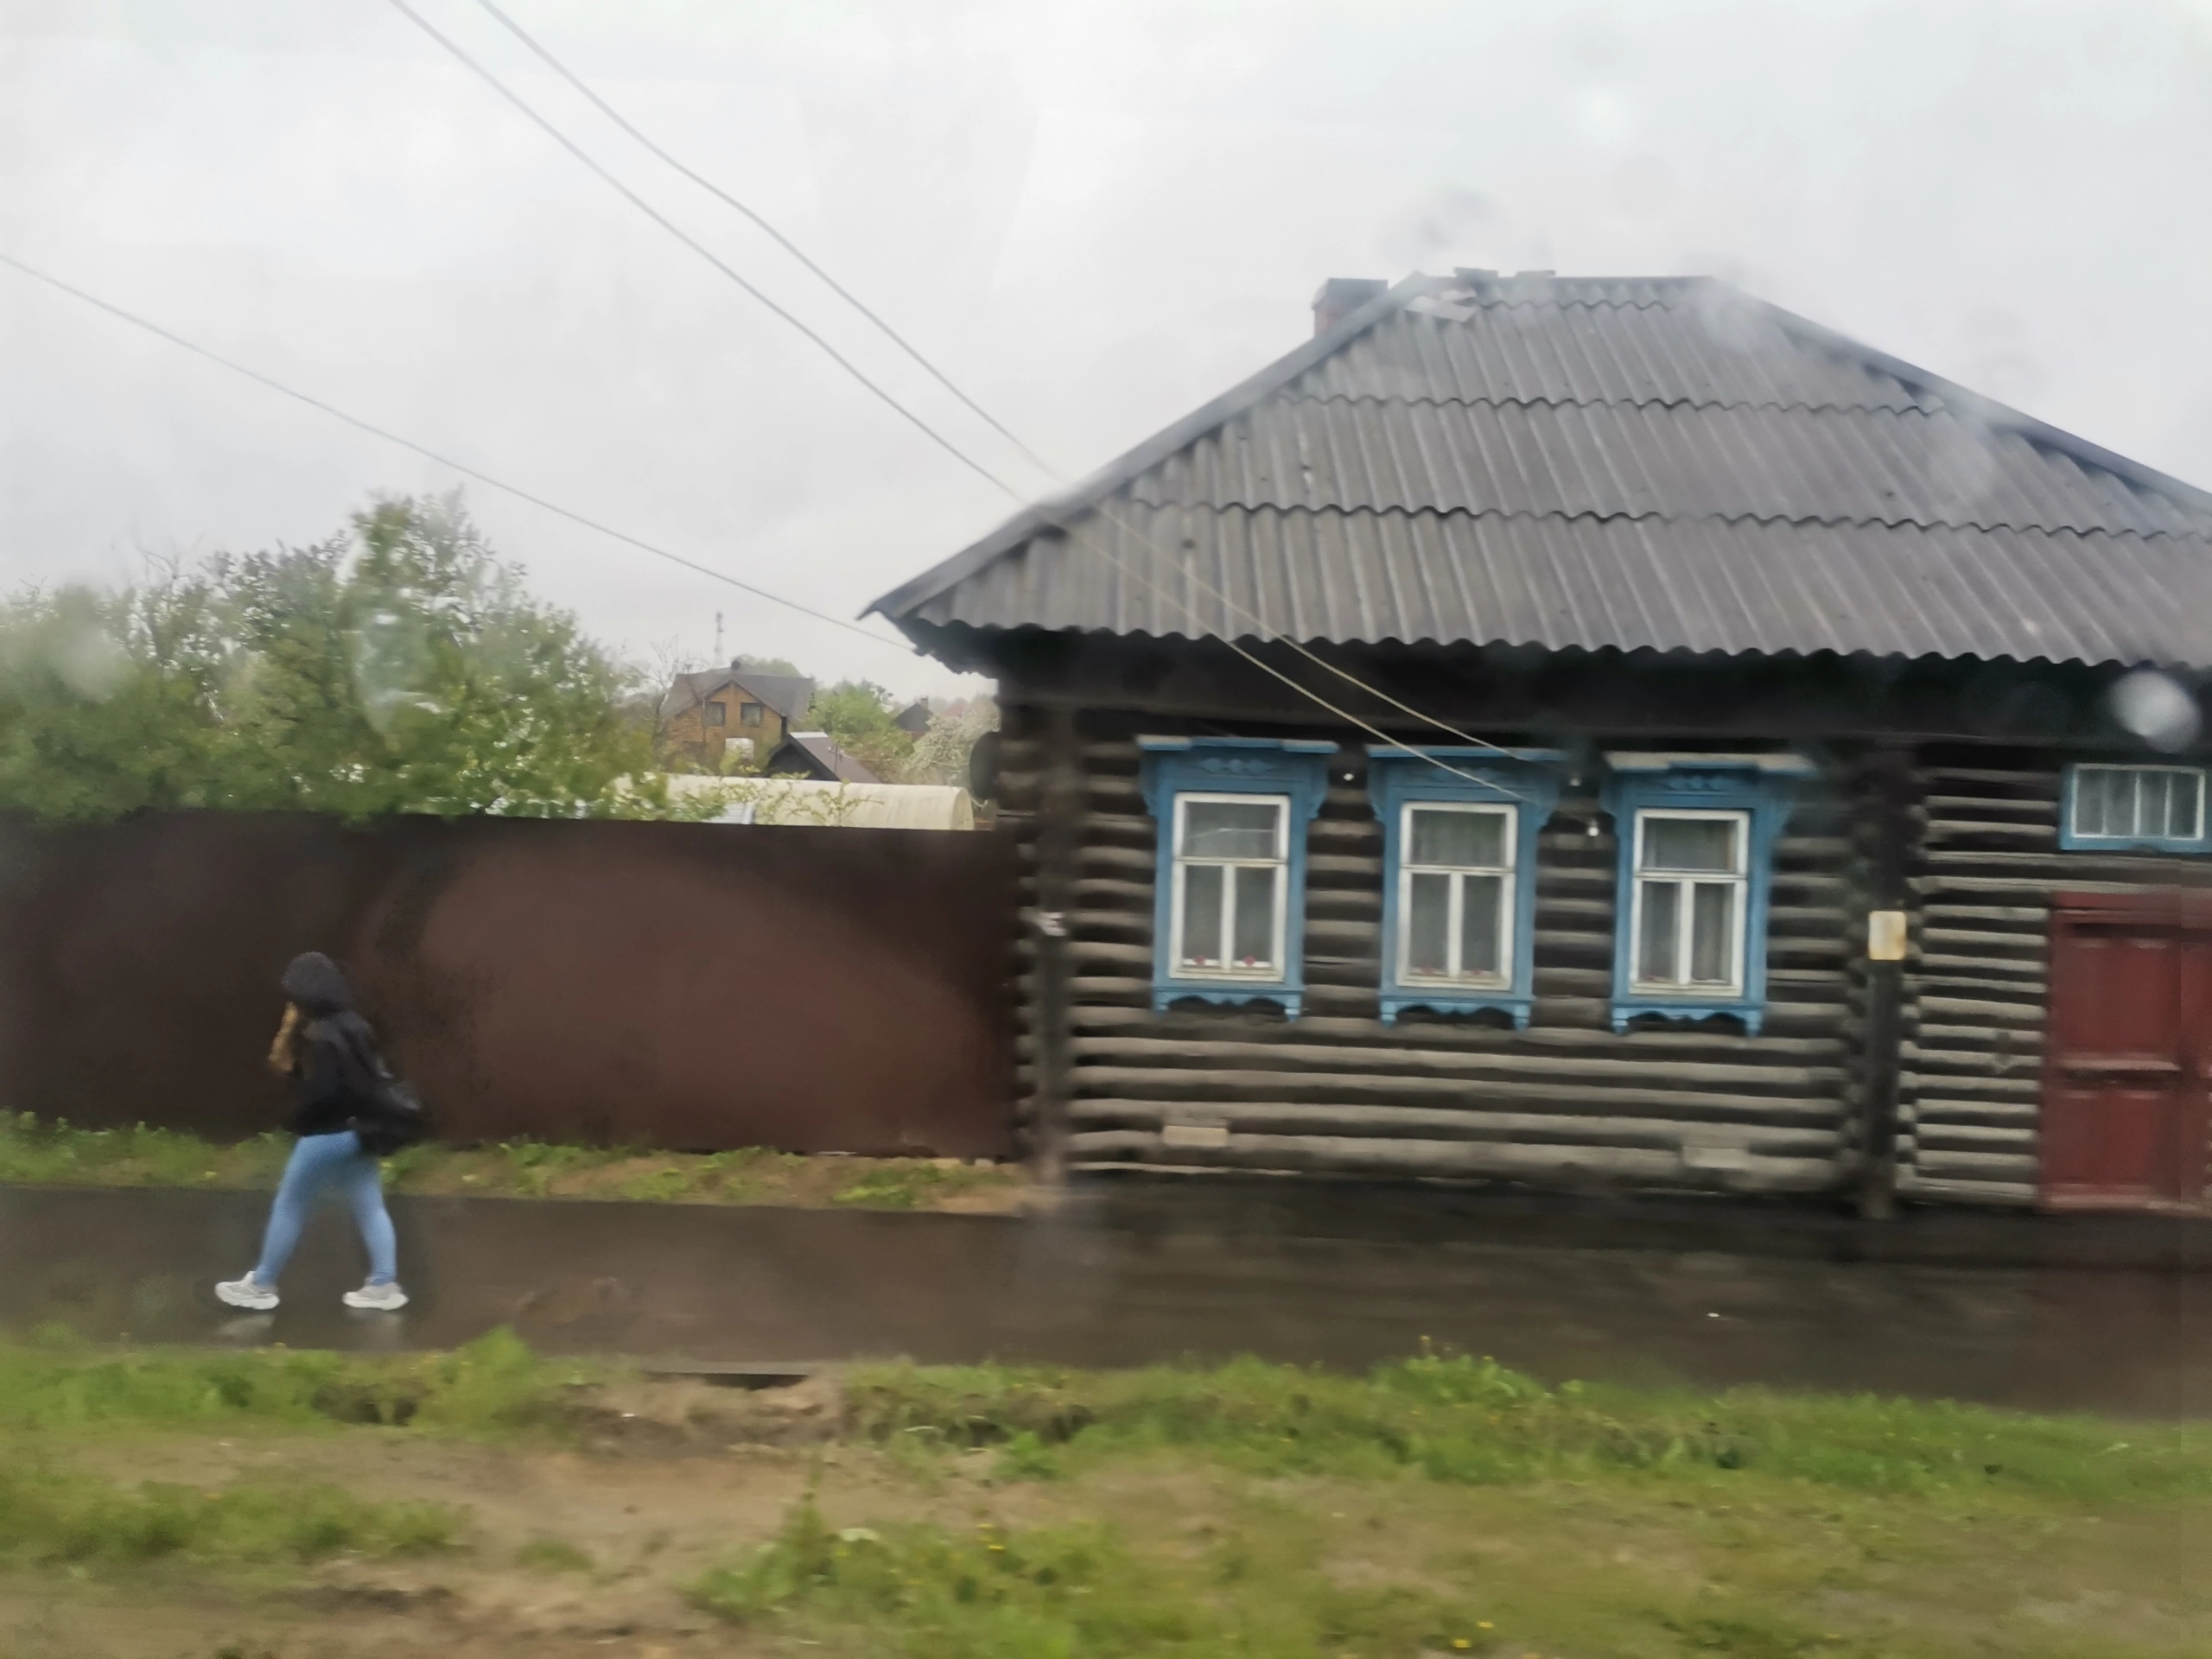 Жители поселка Ветлужский остались без домов после пожара